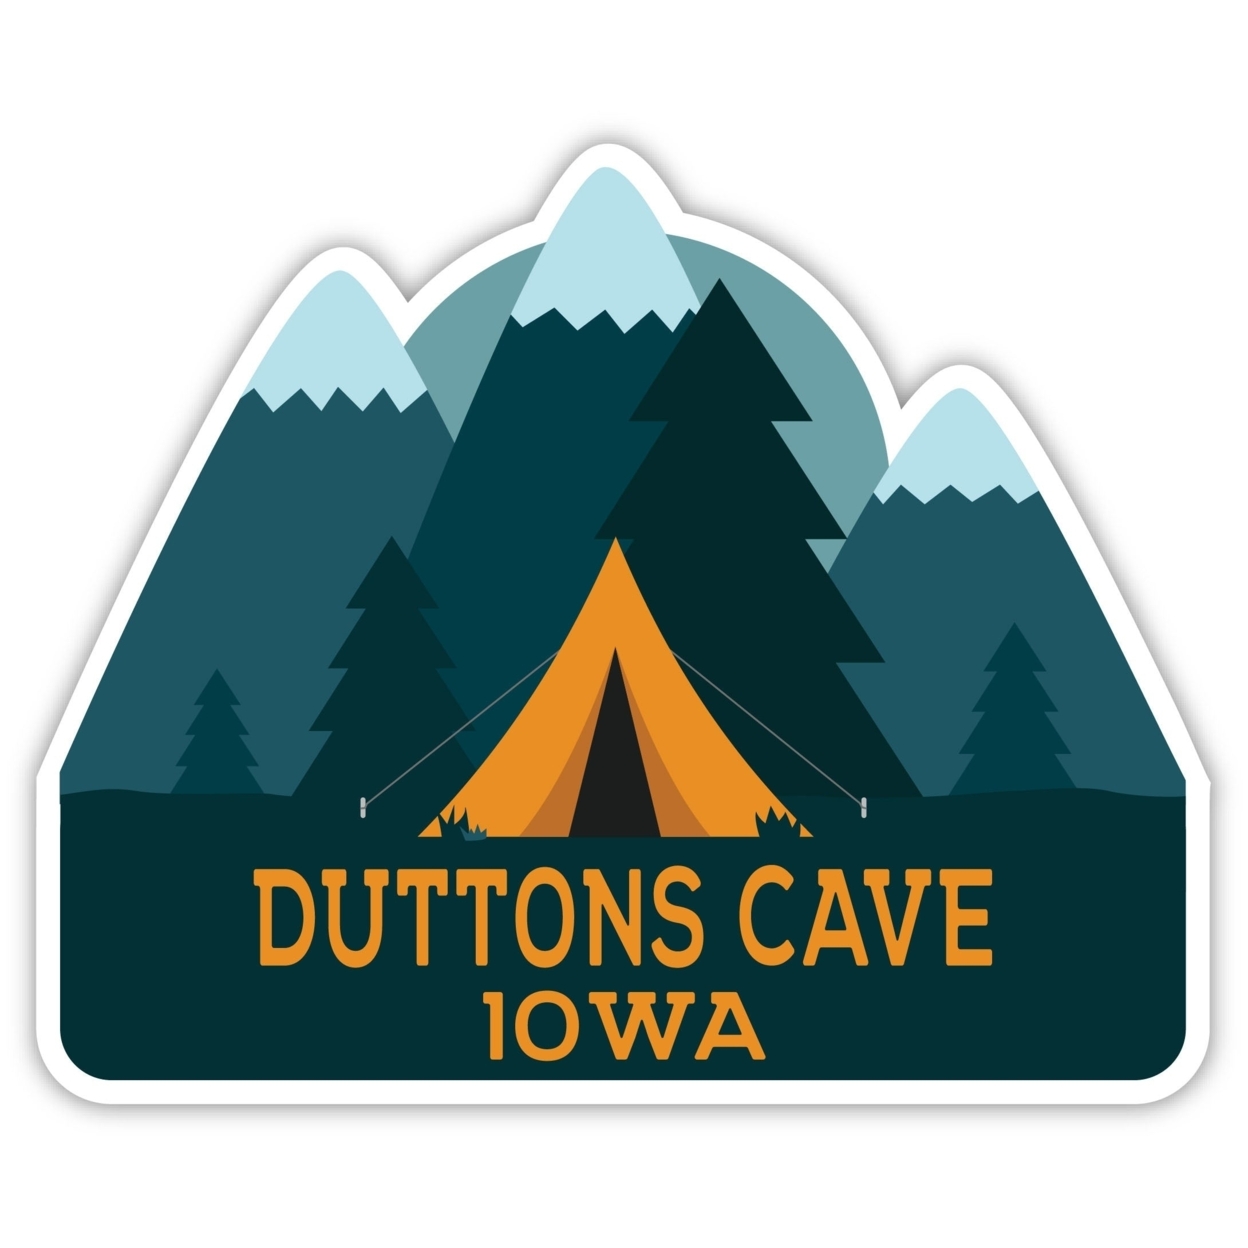 Duttons Cave Iowa Souvenir Decorative Stickers (Choose Theme And Size) - Single Unit, 6-Inch, Tent